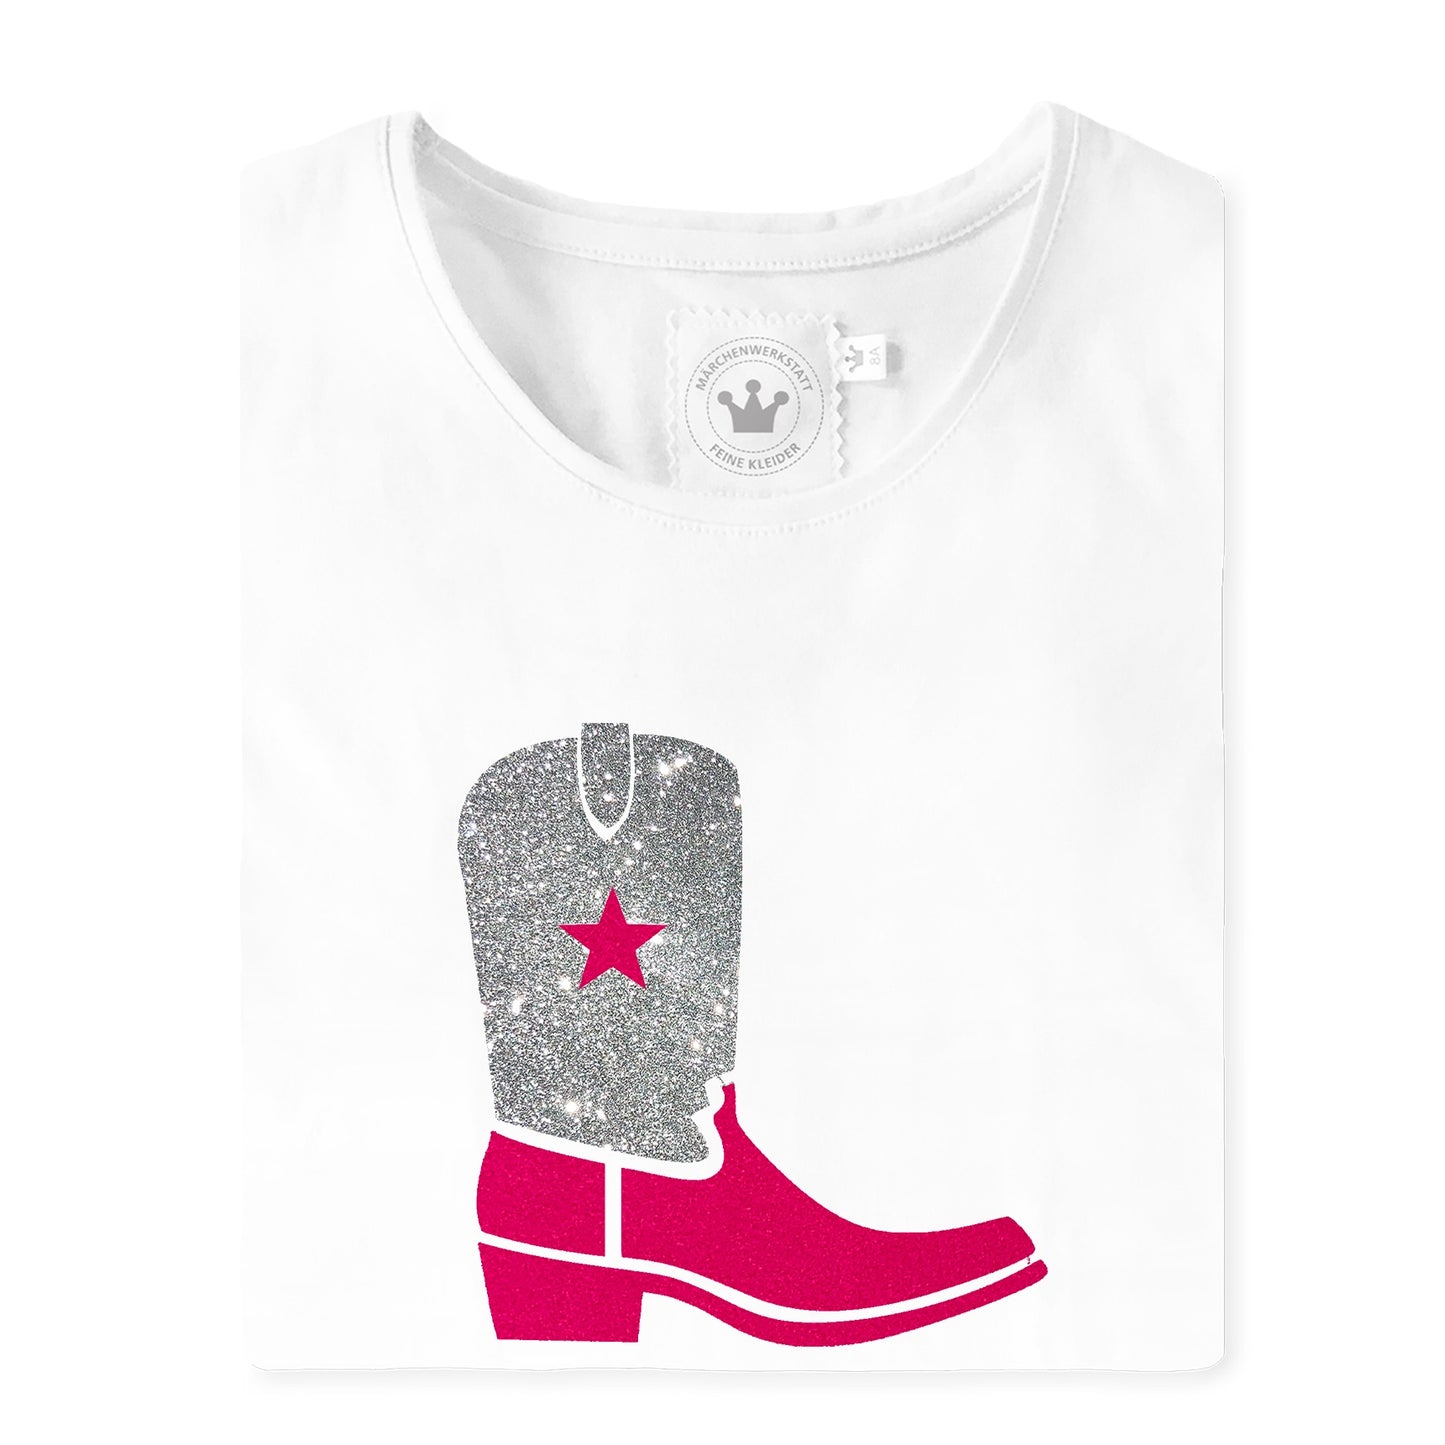 CowboyT-Shirt mit Stiefel aus Samt/Glitzer und gold Stern